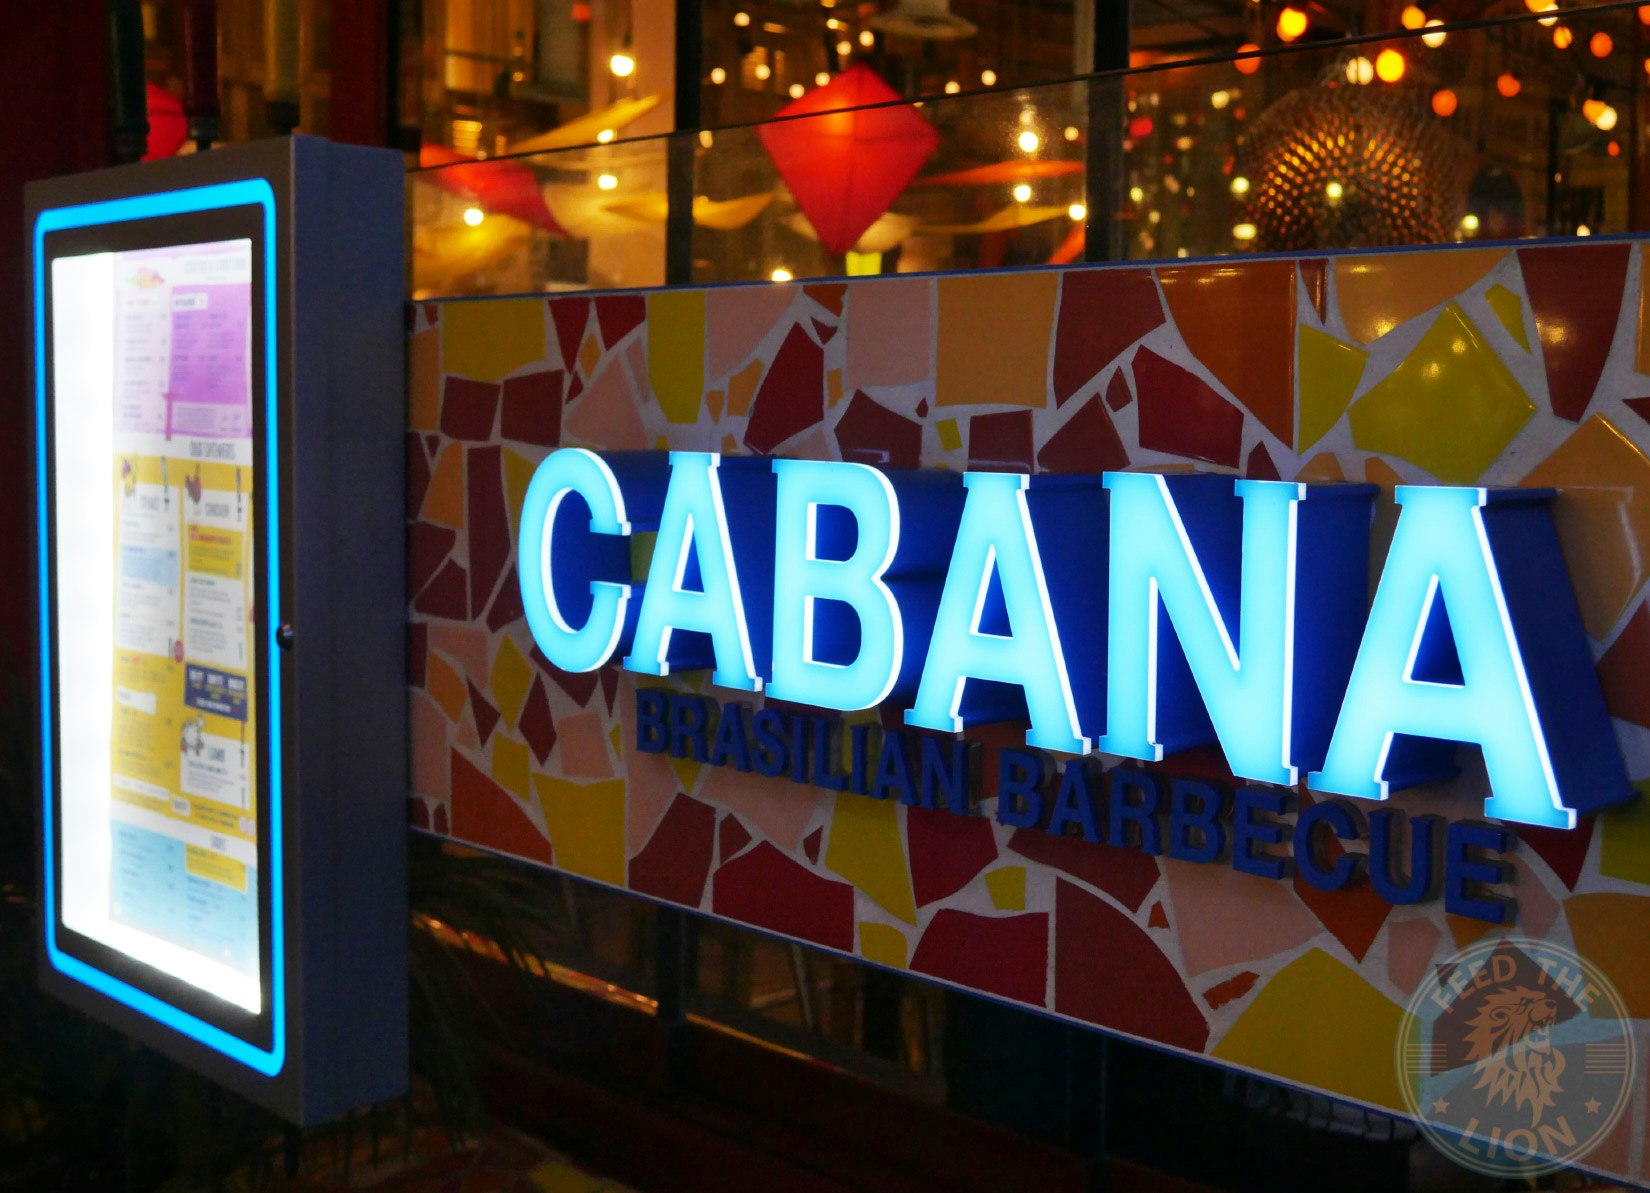 Cabana White City - The Rio Restaurant image 7